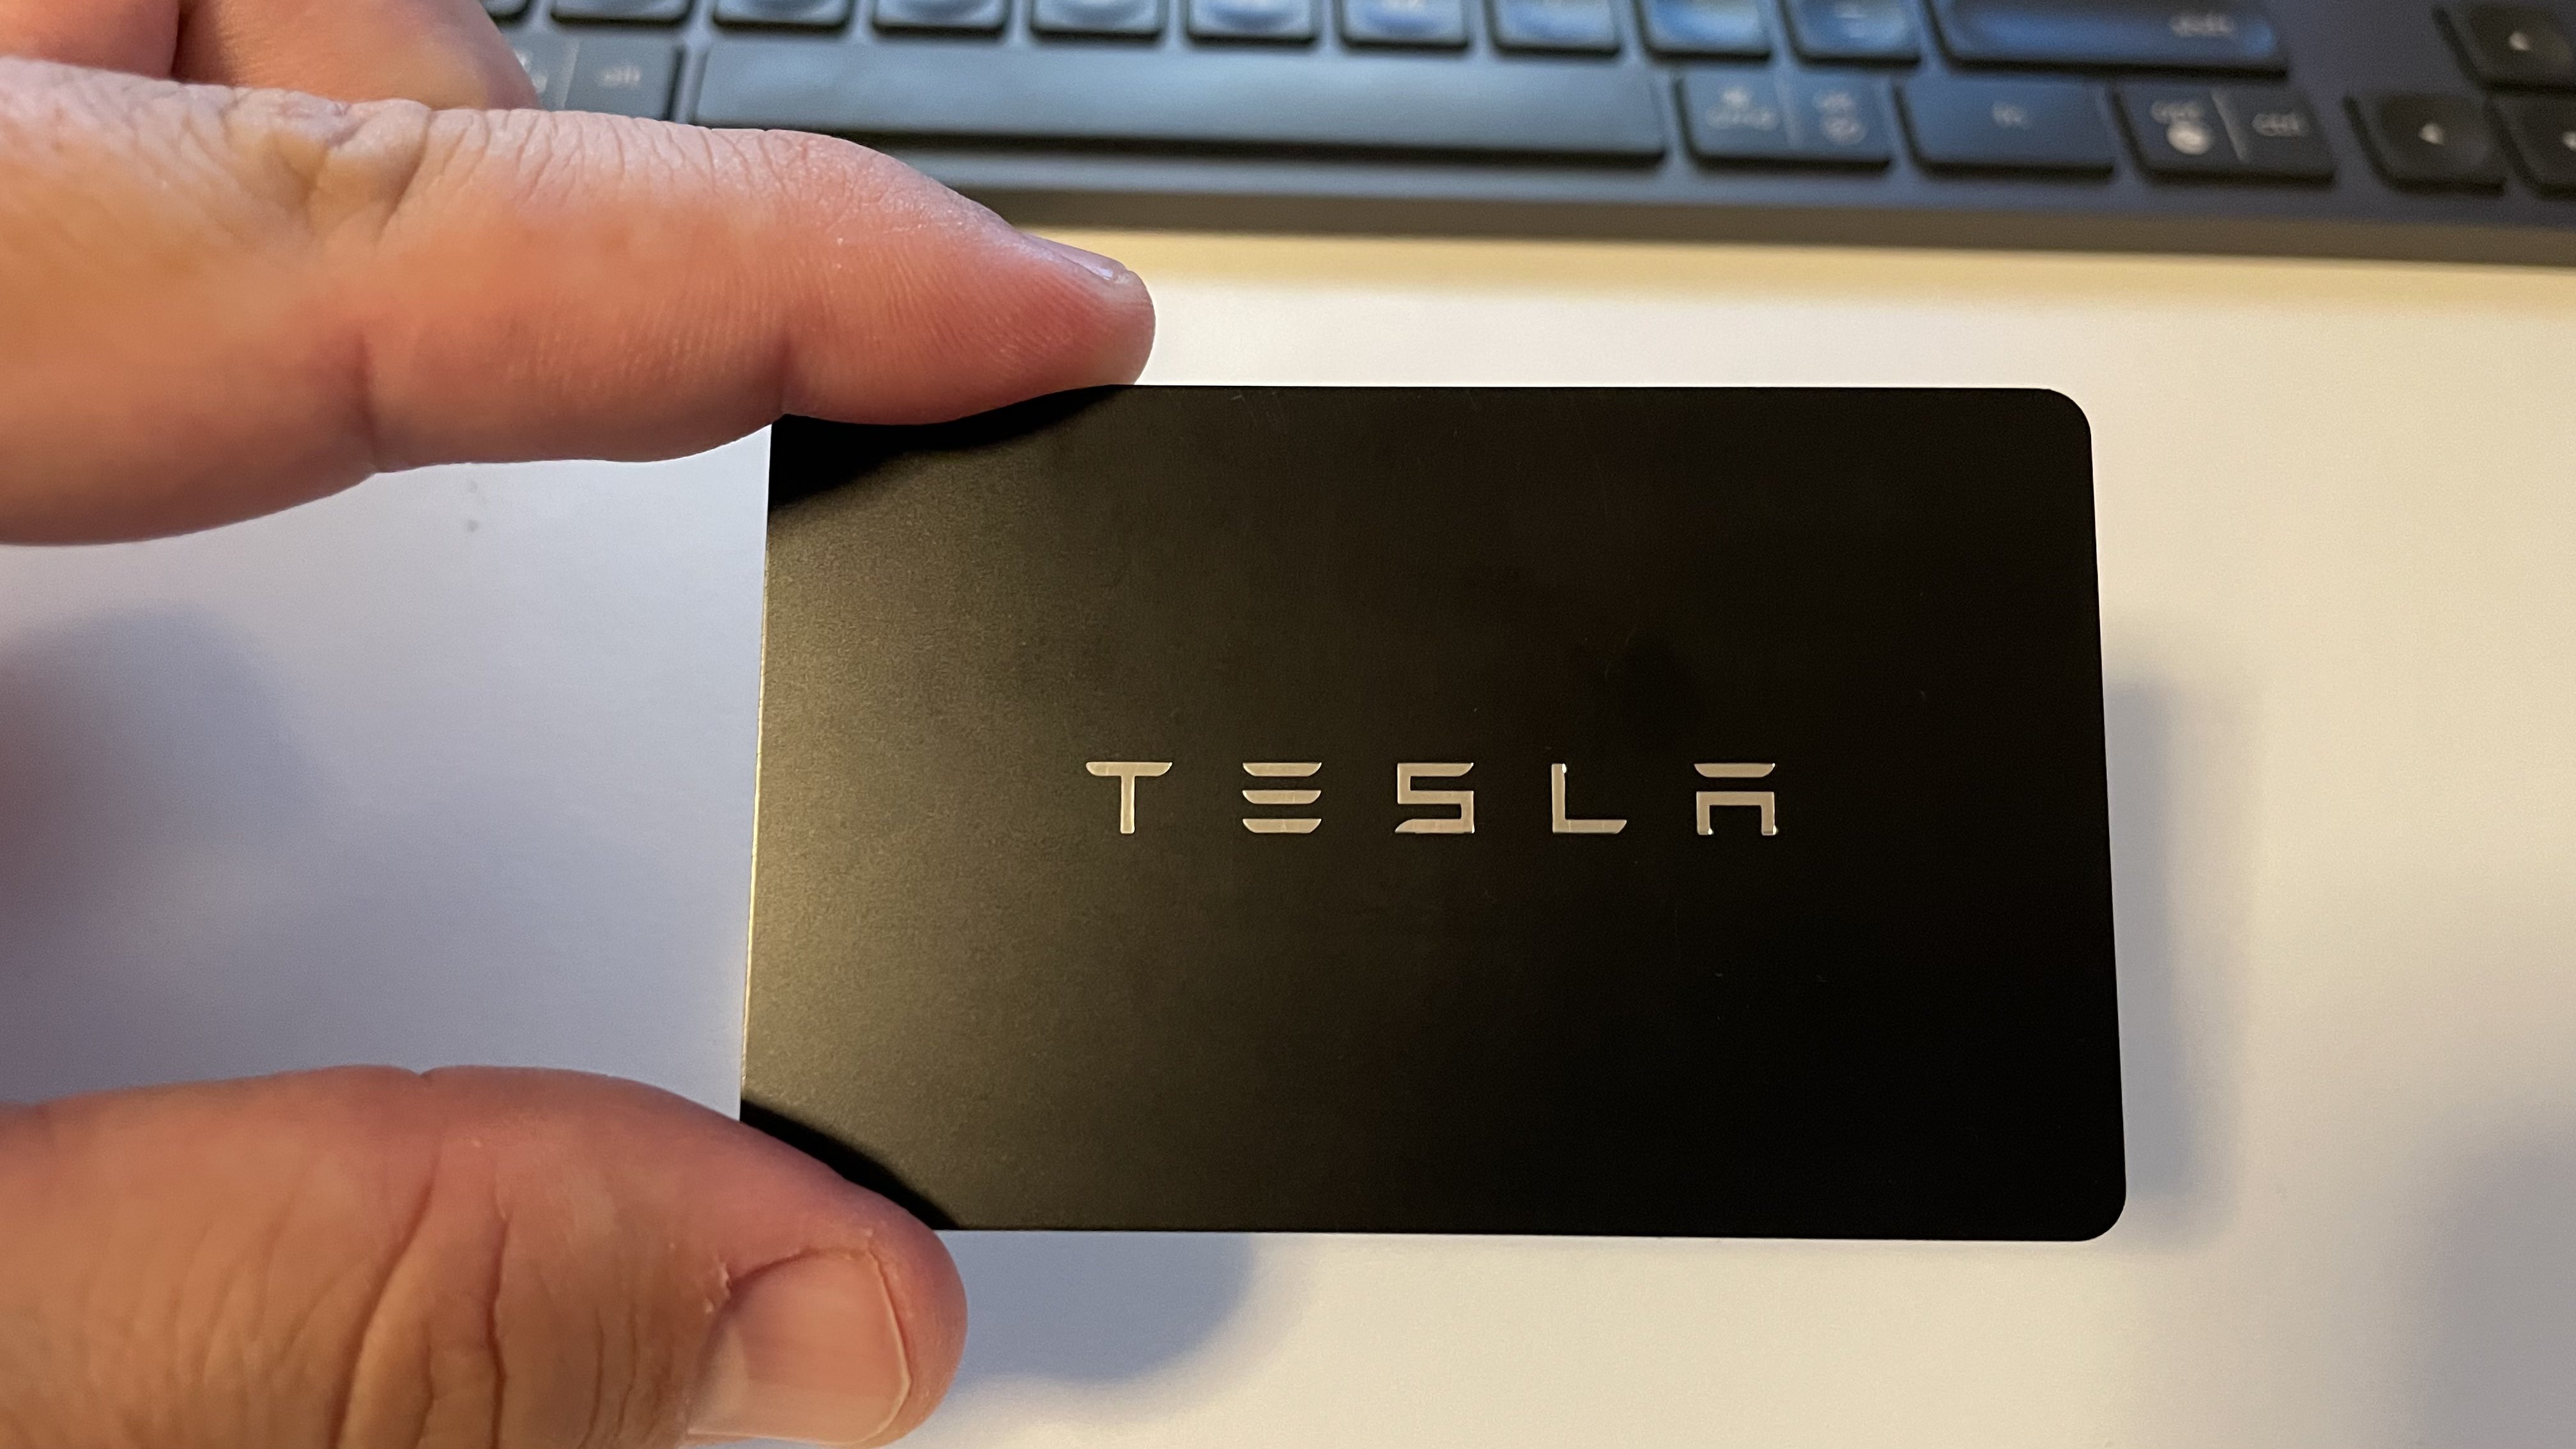 Viviendo en Suiza 🇨🇭 Twitter: "Los Teslas no usan llaves convencionales. La es una tarjeta con chip. La asocias celular y el teléfono se convierte en tu llave